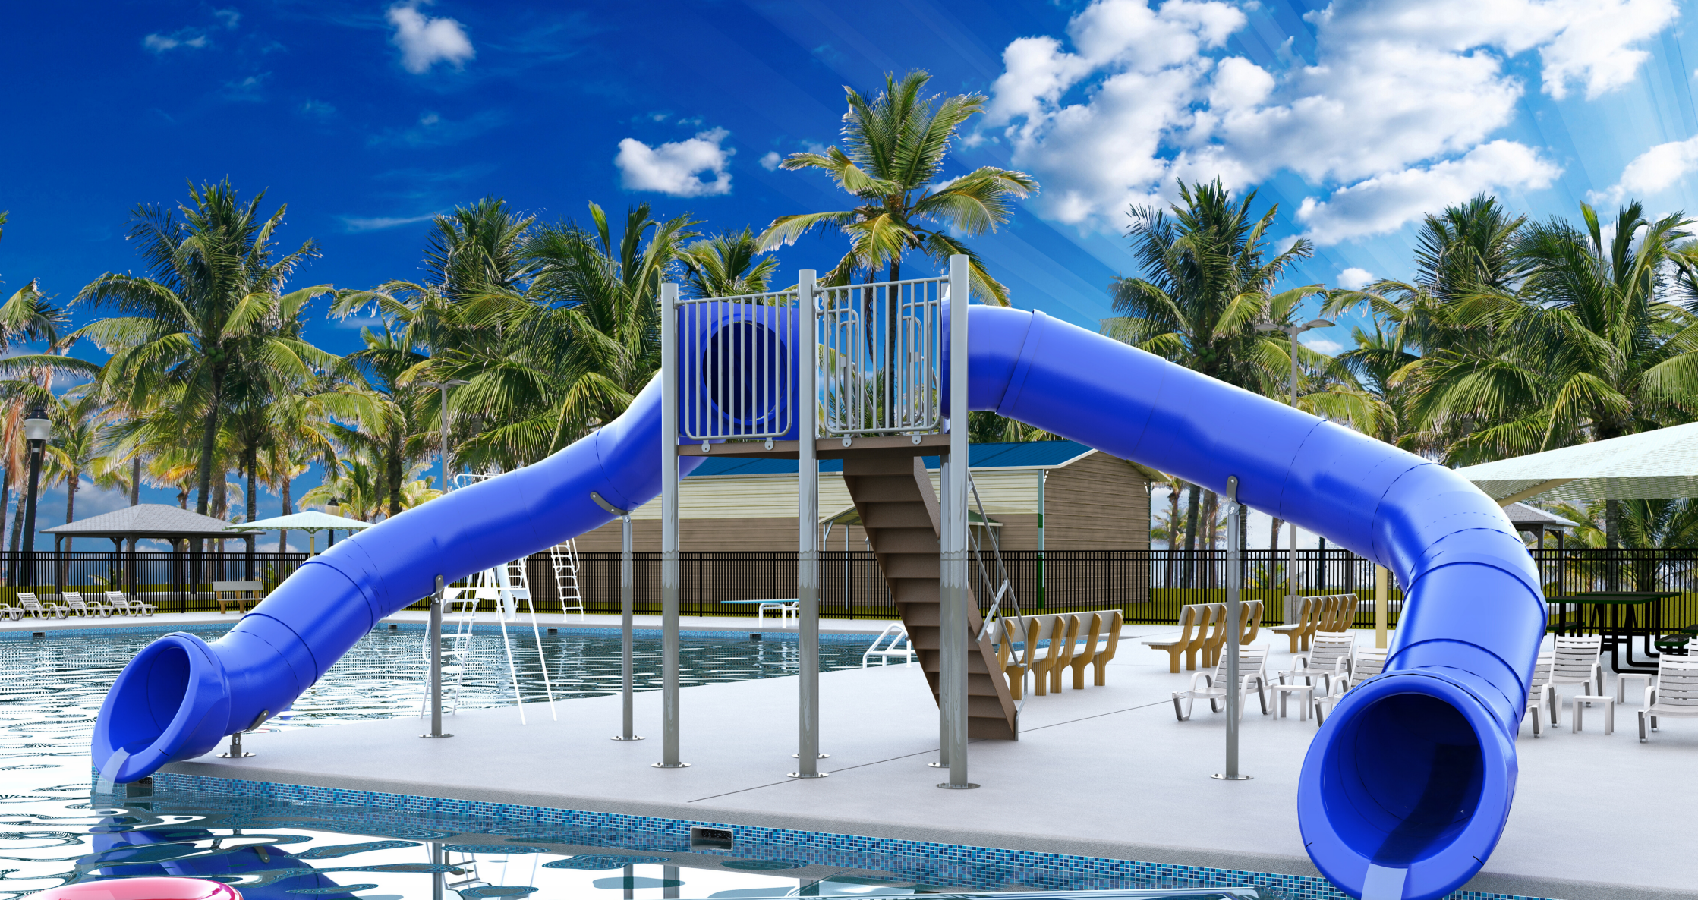 Double Flume Poolside Slide, Blue